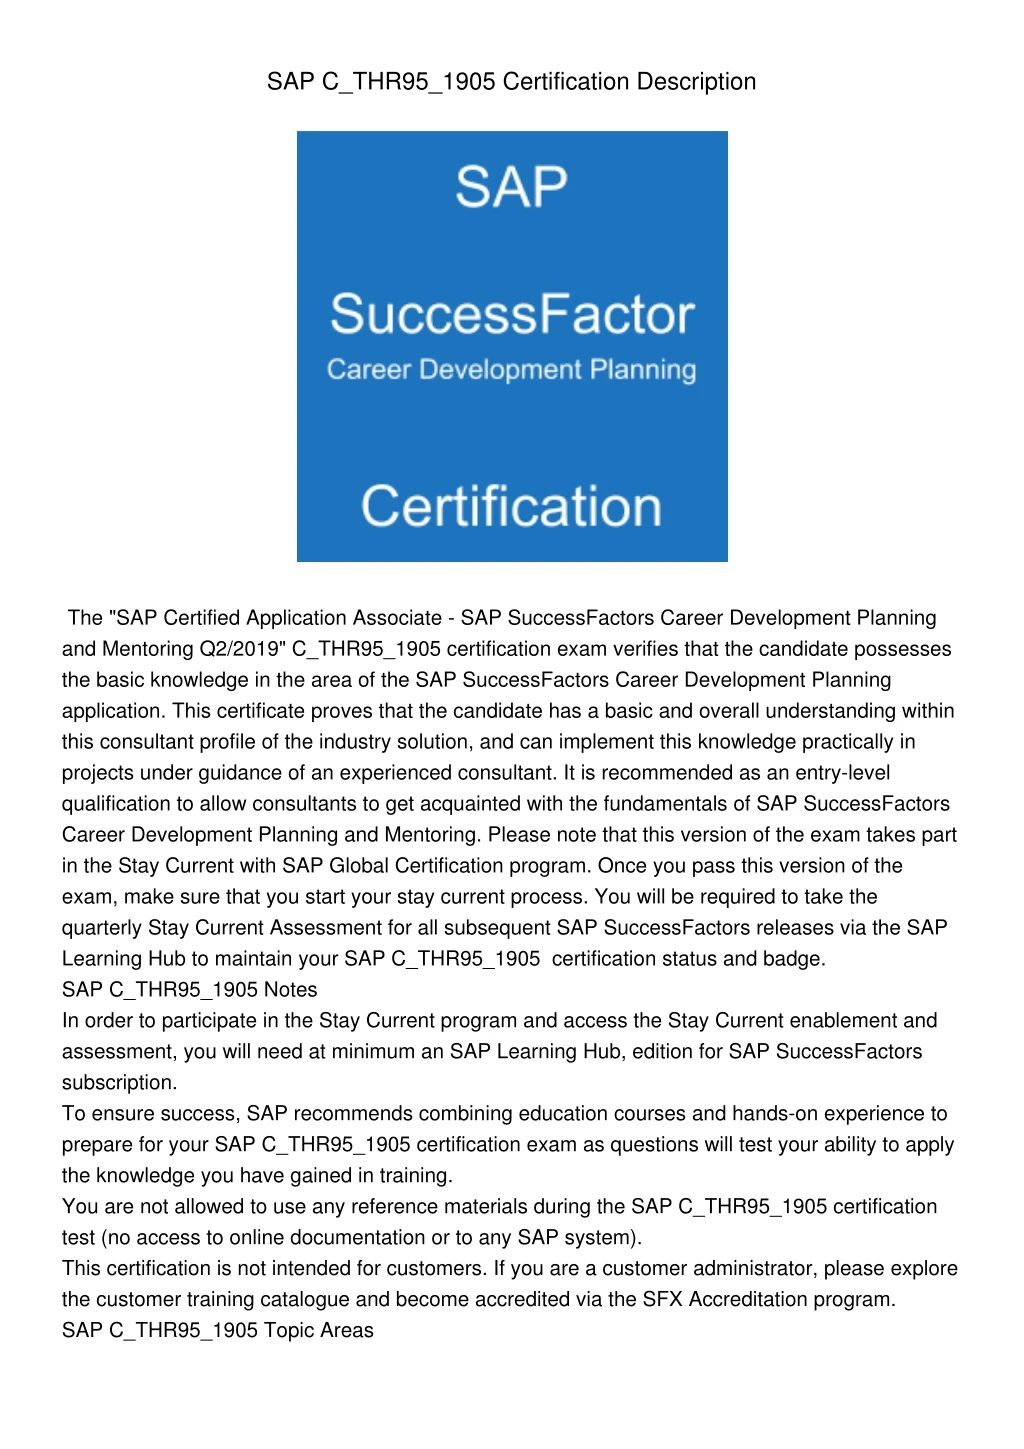 sap c thr95 1905 certification description